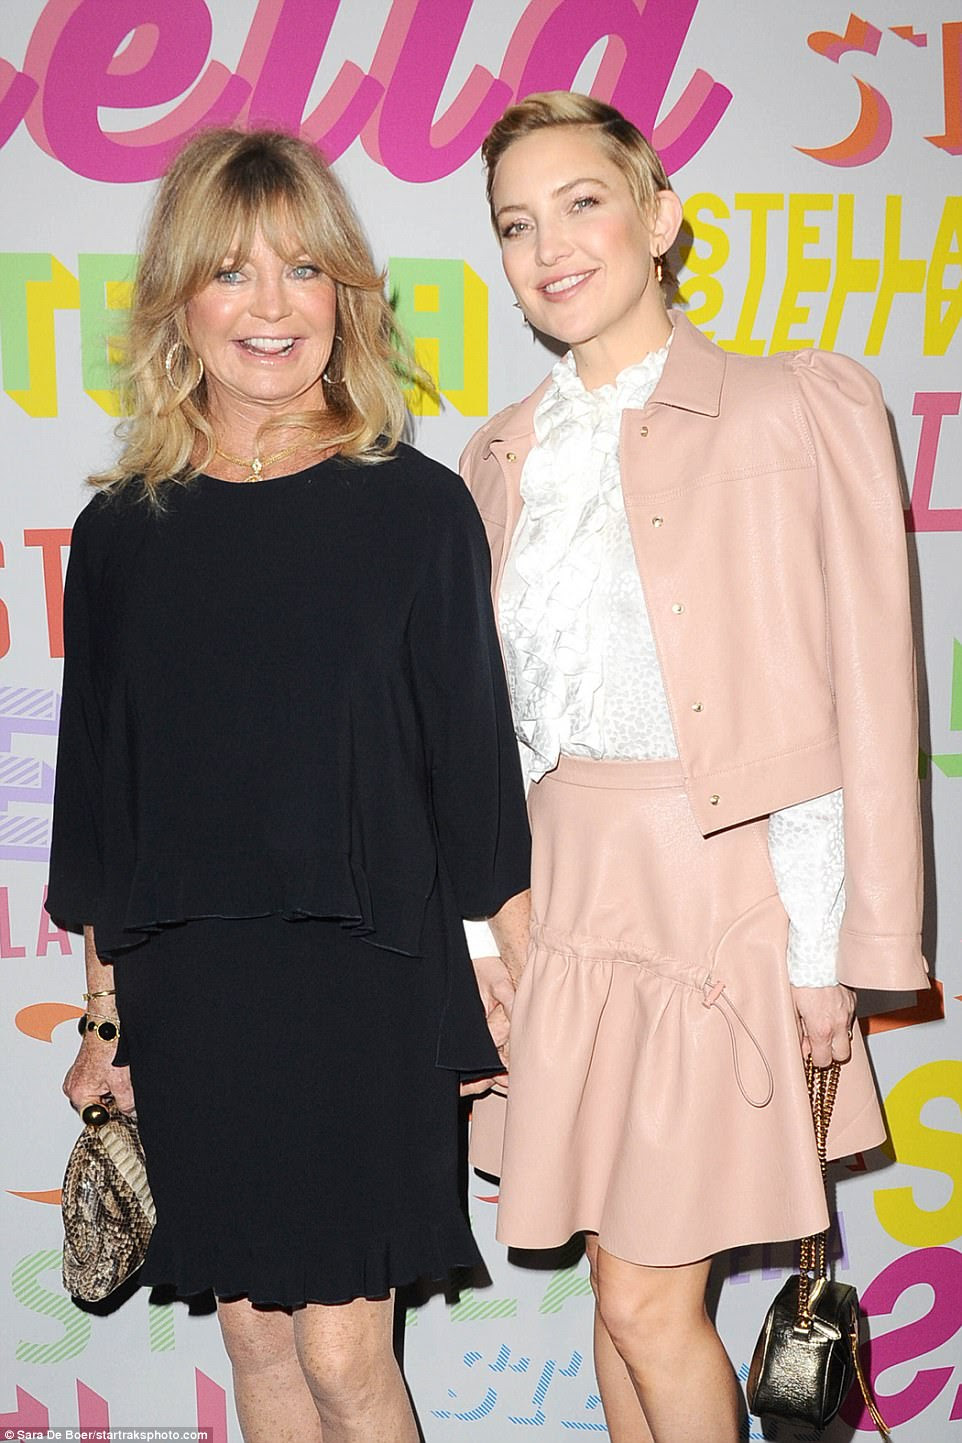 Tempo da família: a mãe de Kate, Goldie Hawn, havia virado para o evento Stella McCartney, juntando uma blusa preta com uma saia preta e posando ao lado de sua filha